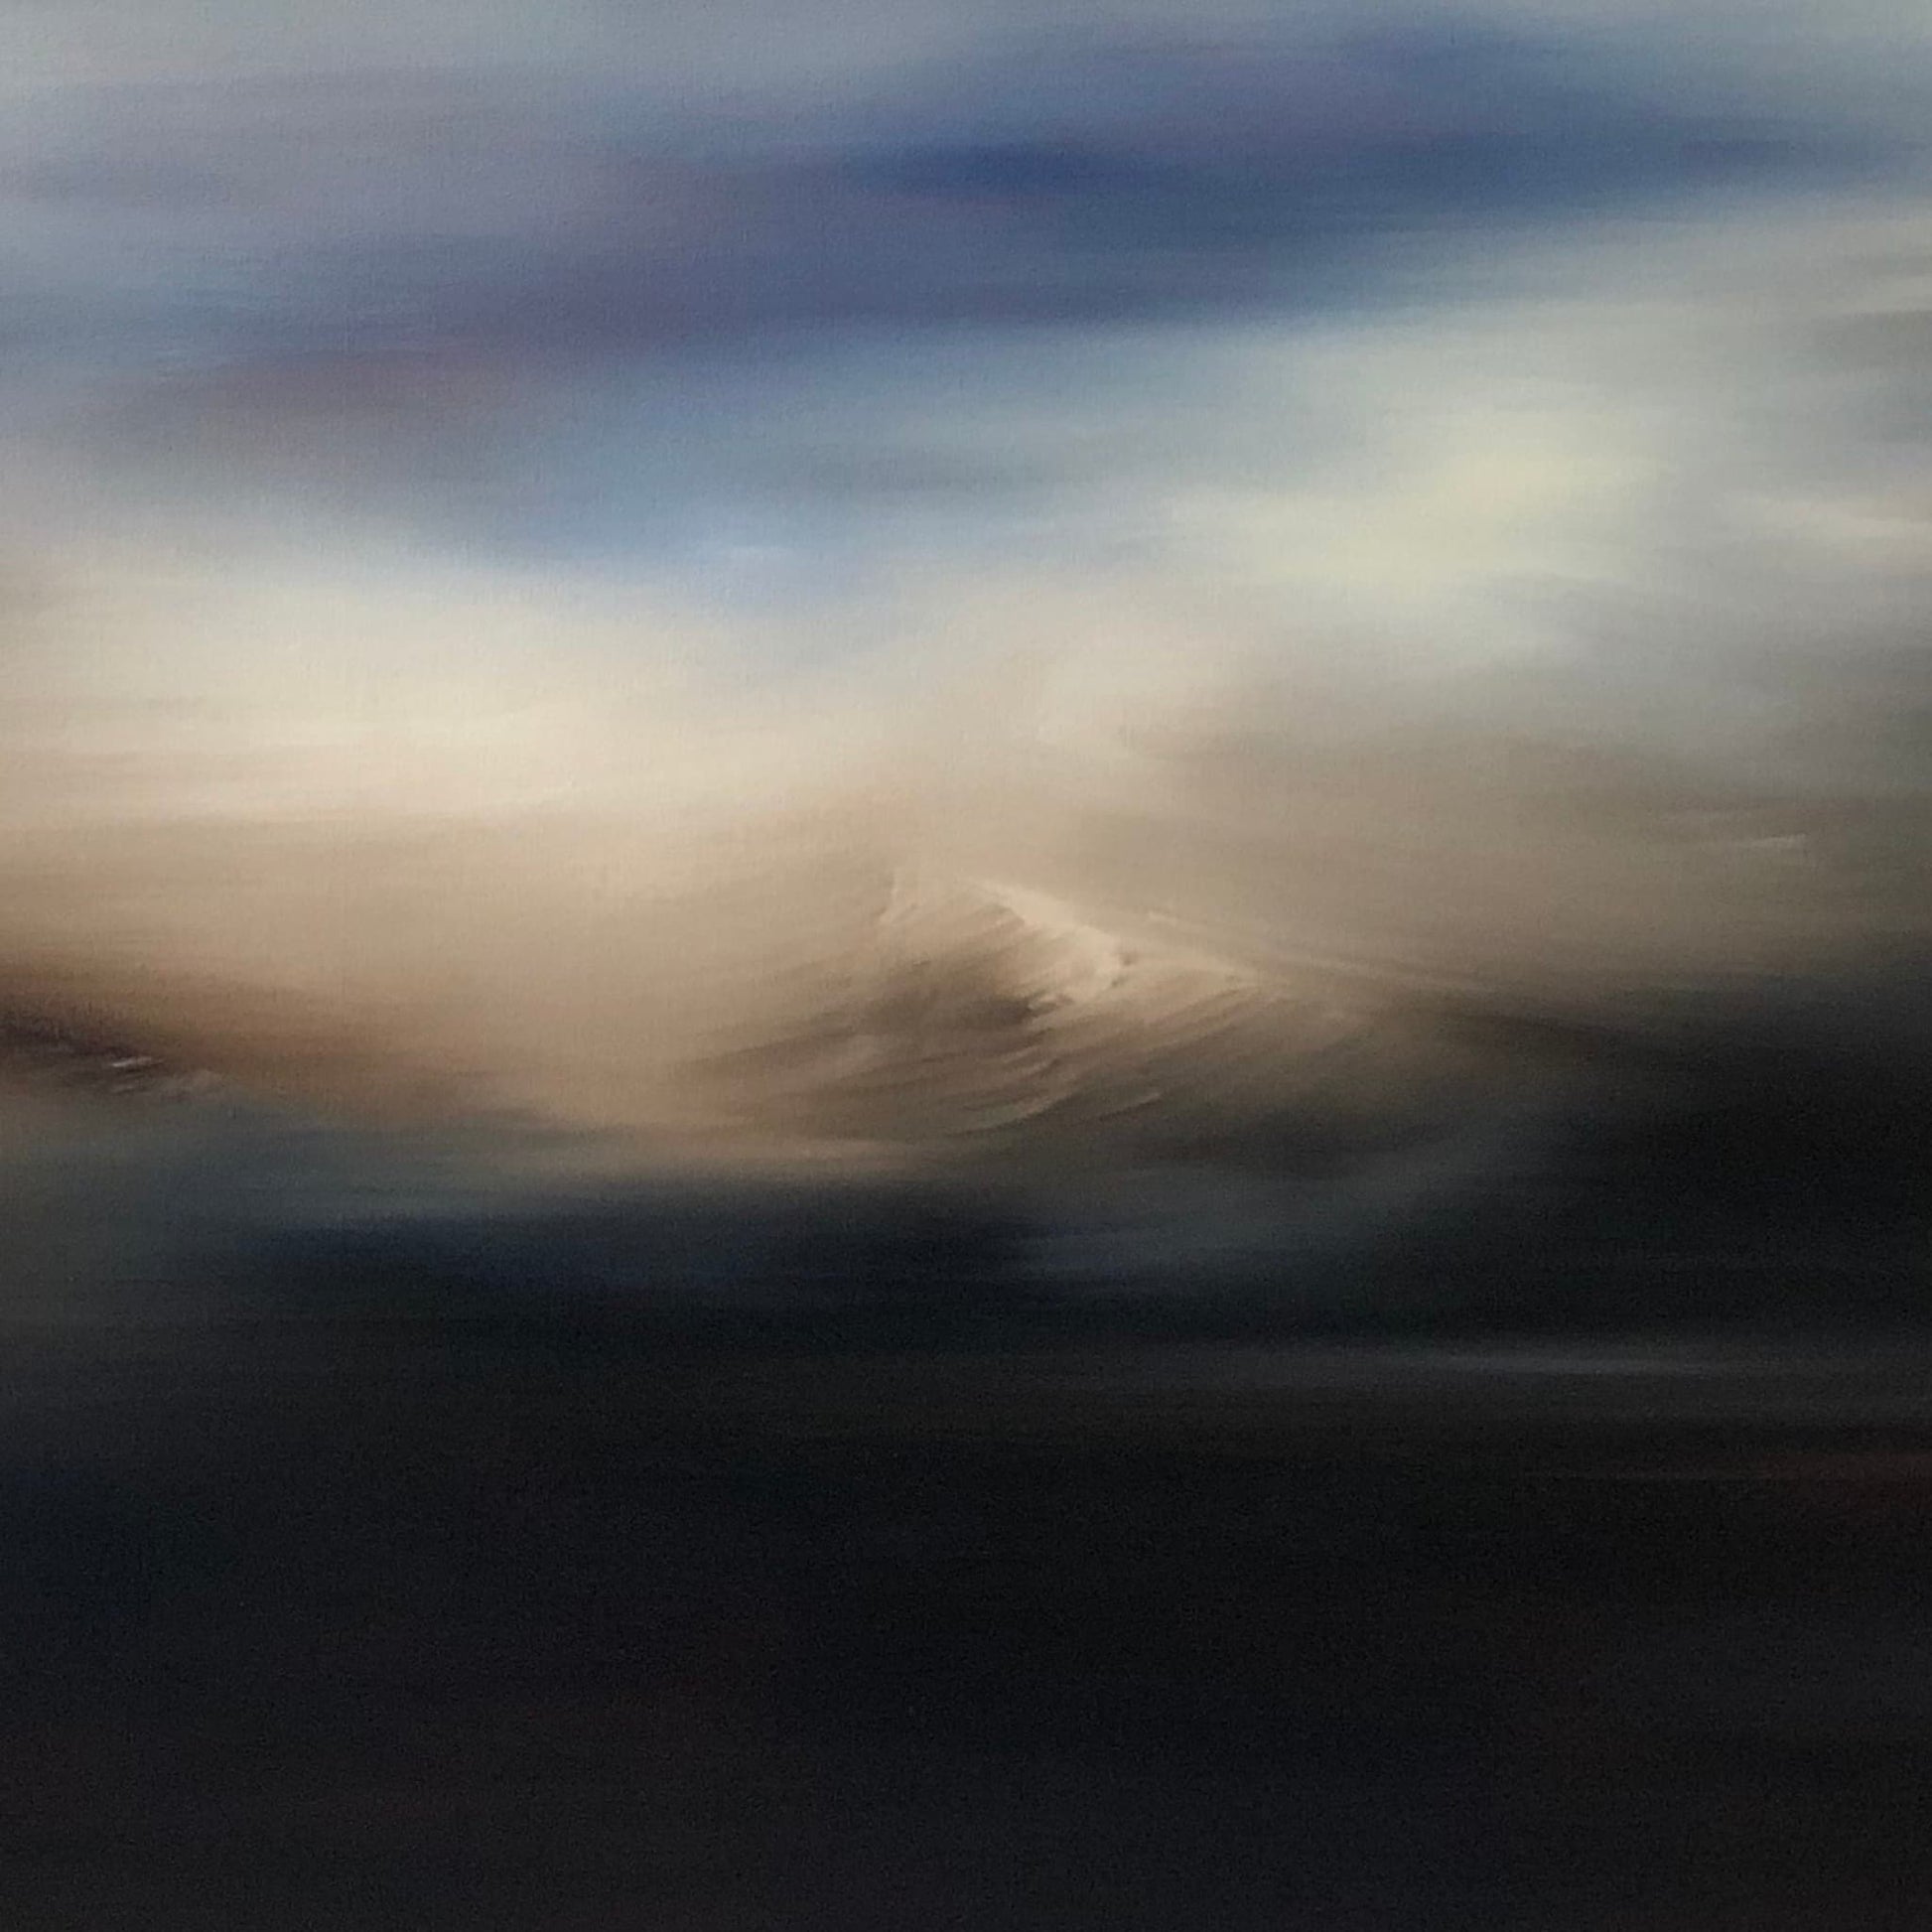 Closeup of Mount Ruapehu through clouds